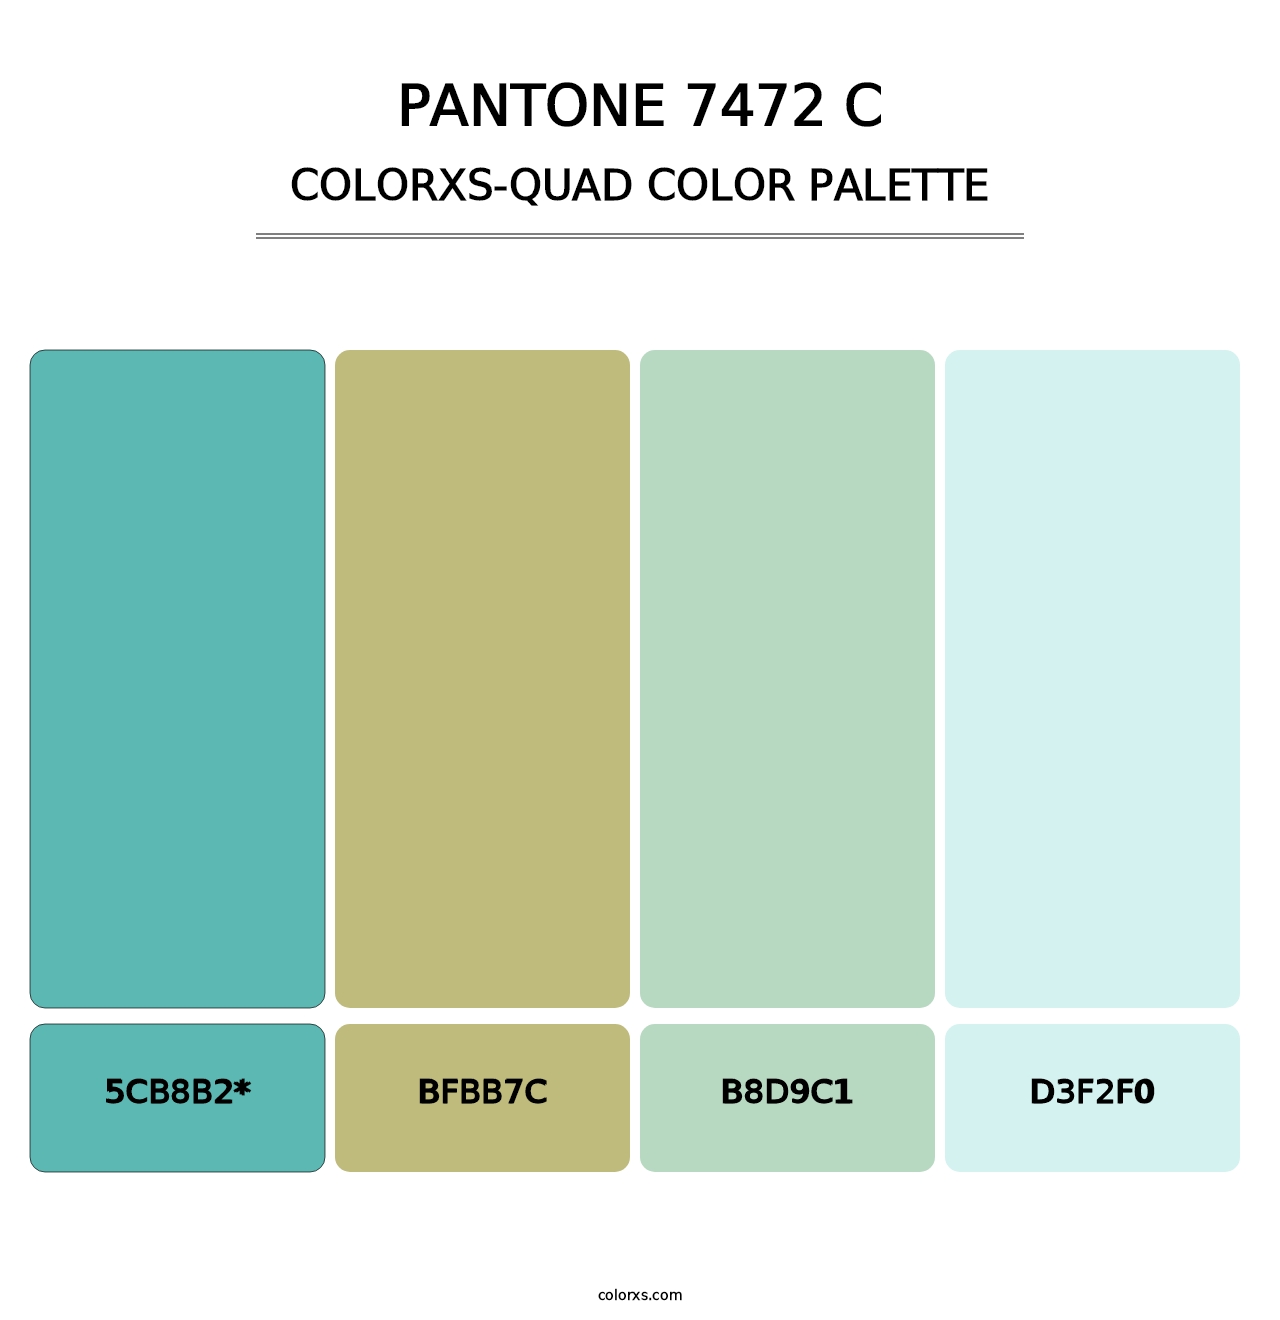 PANTONE 7472 C - Colorxs Quad Palette